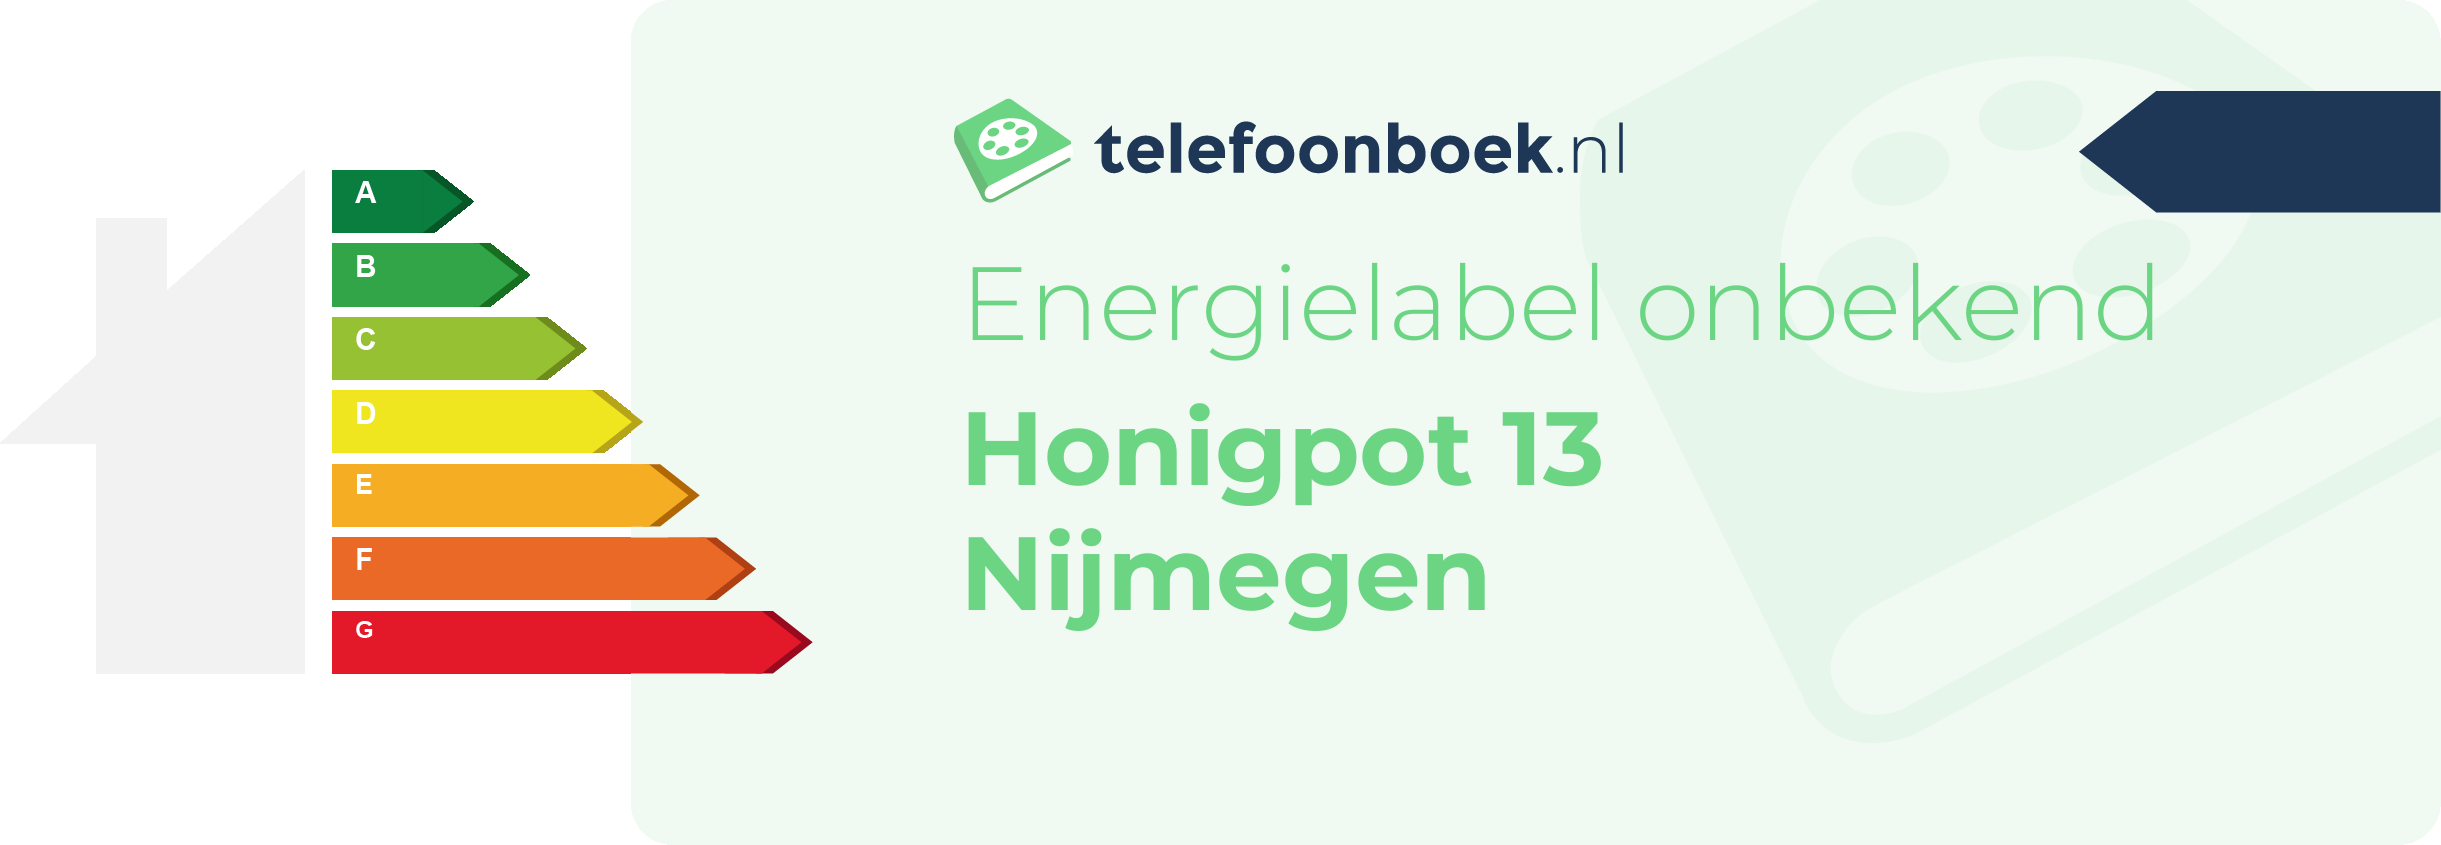 Energielabel Honigpot 13 Nijmegen